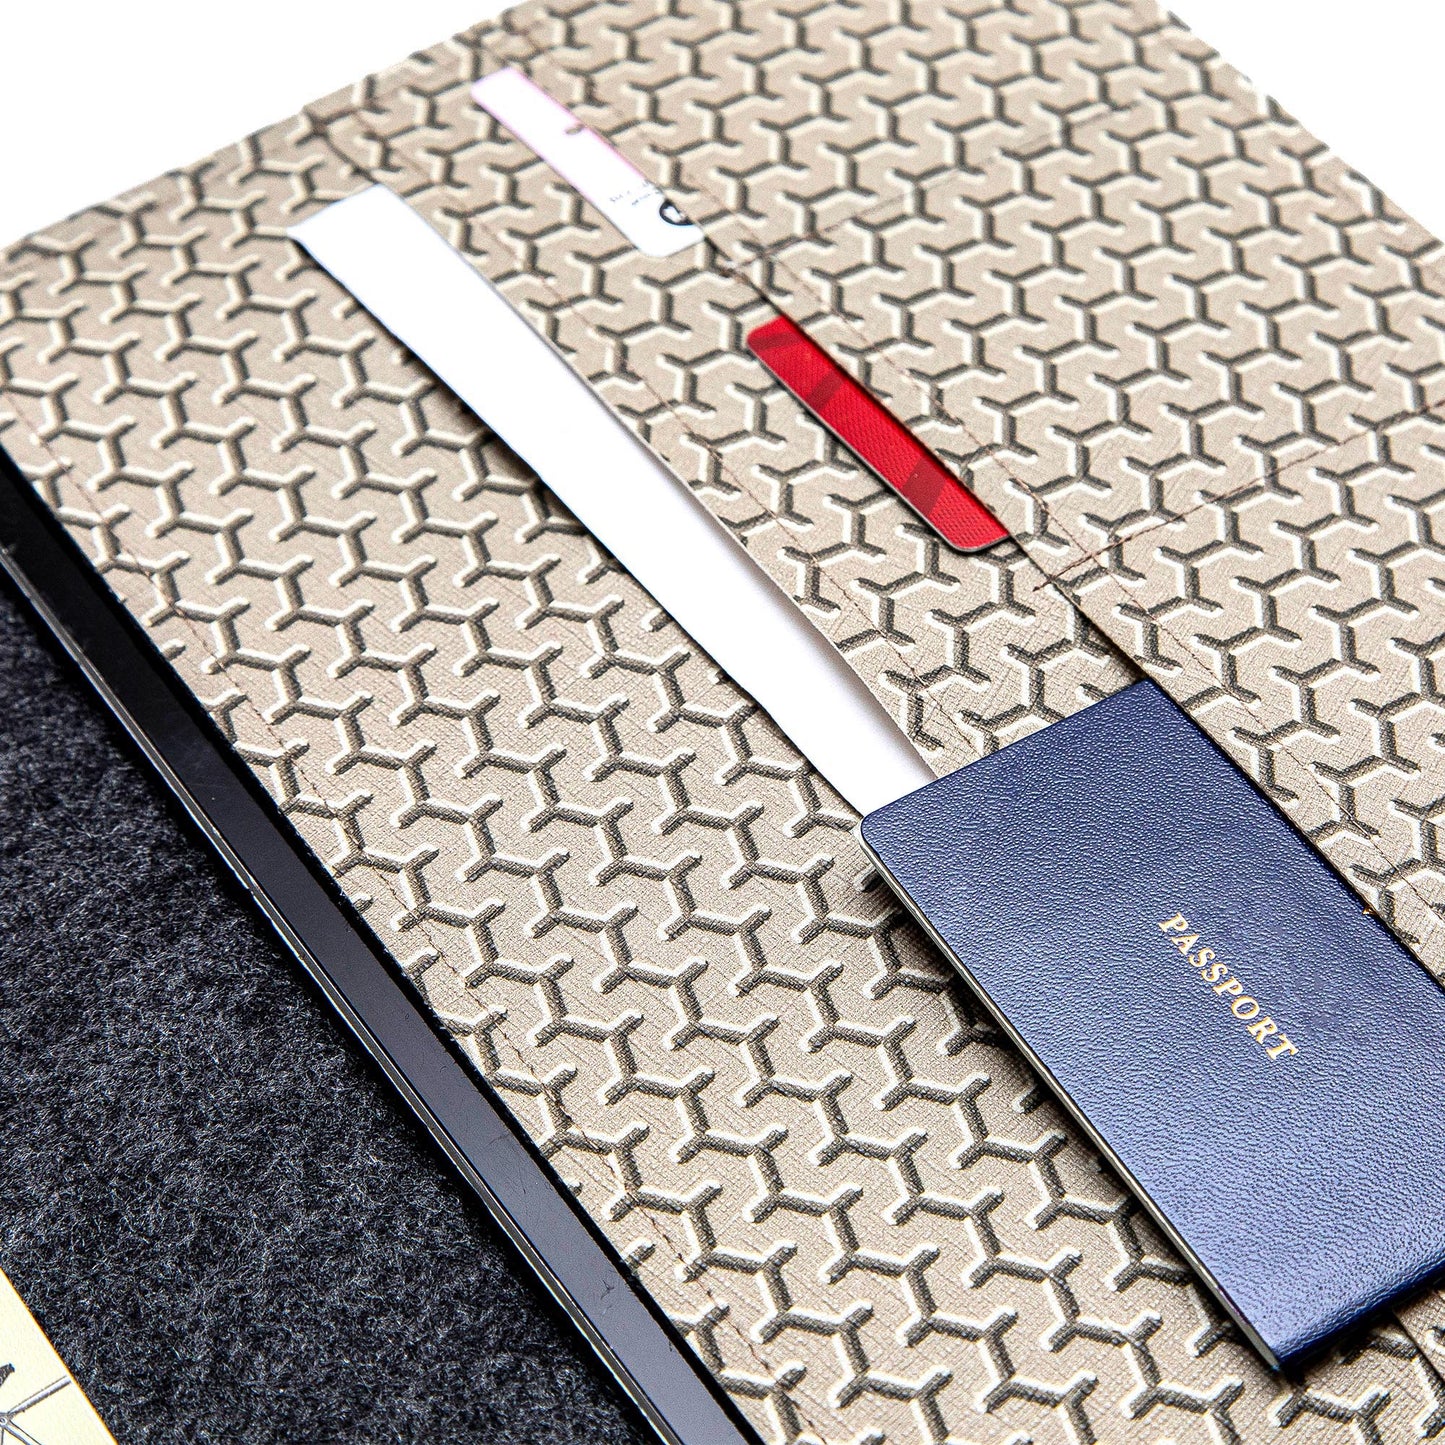 Handmade iPad Cover - Grey Faux Leather Folio for Apple iPad Air/Pro/Mini